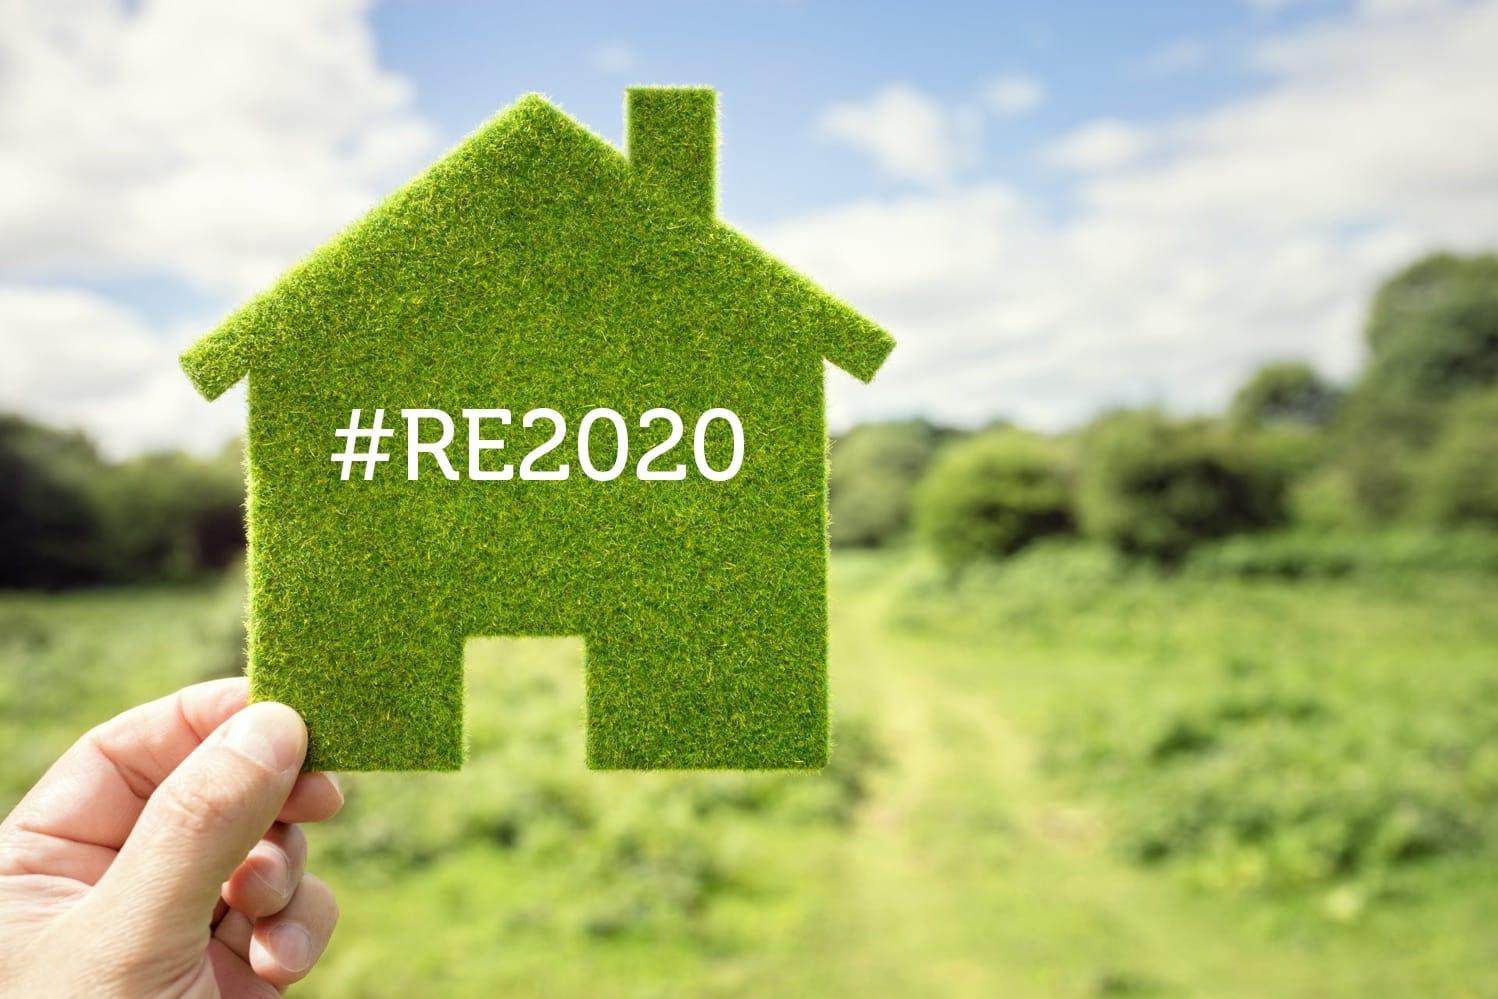 Maison durable gazon RE2020 écologie innovation